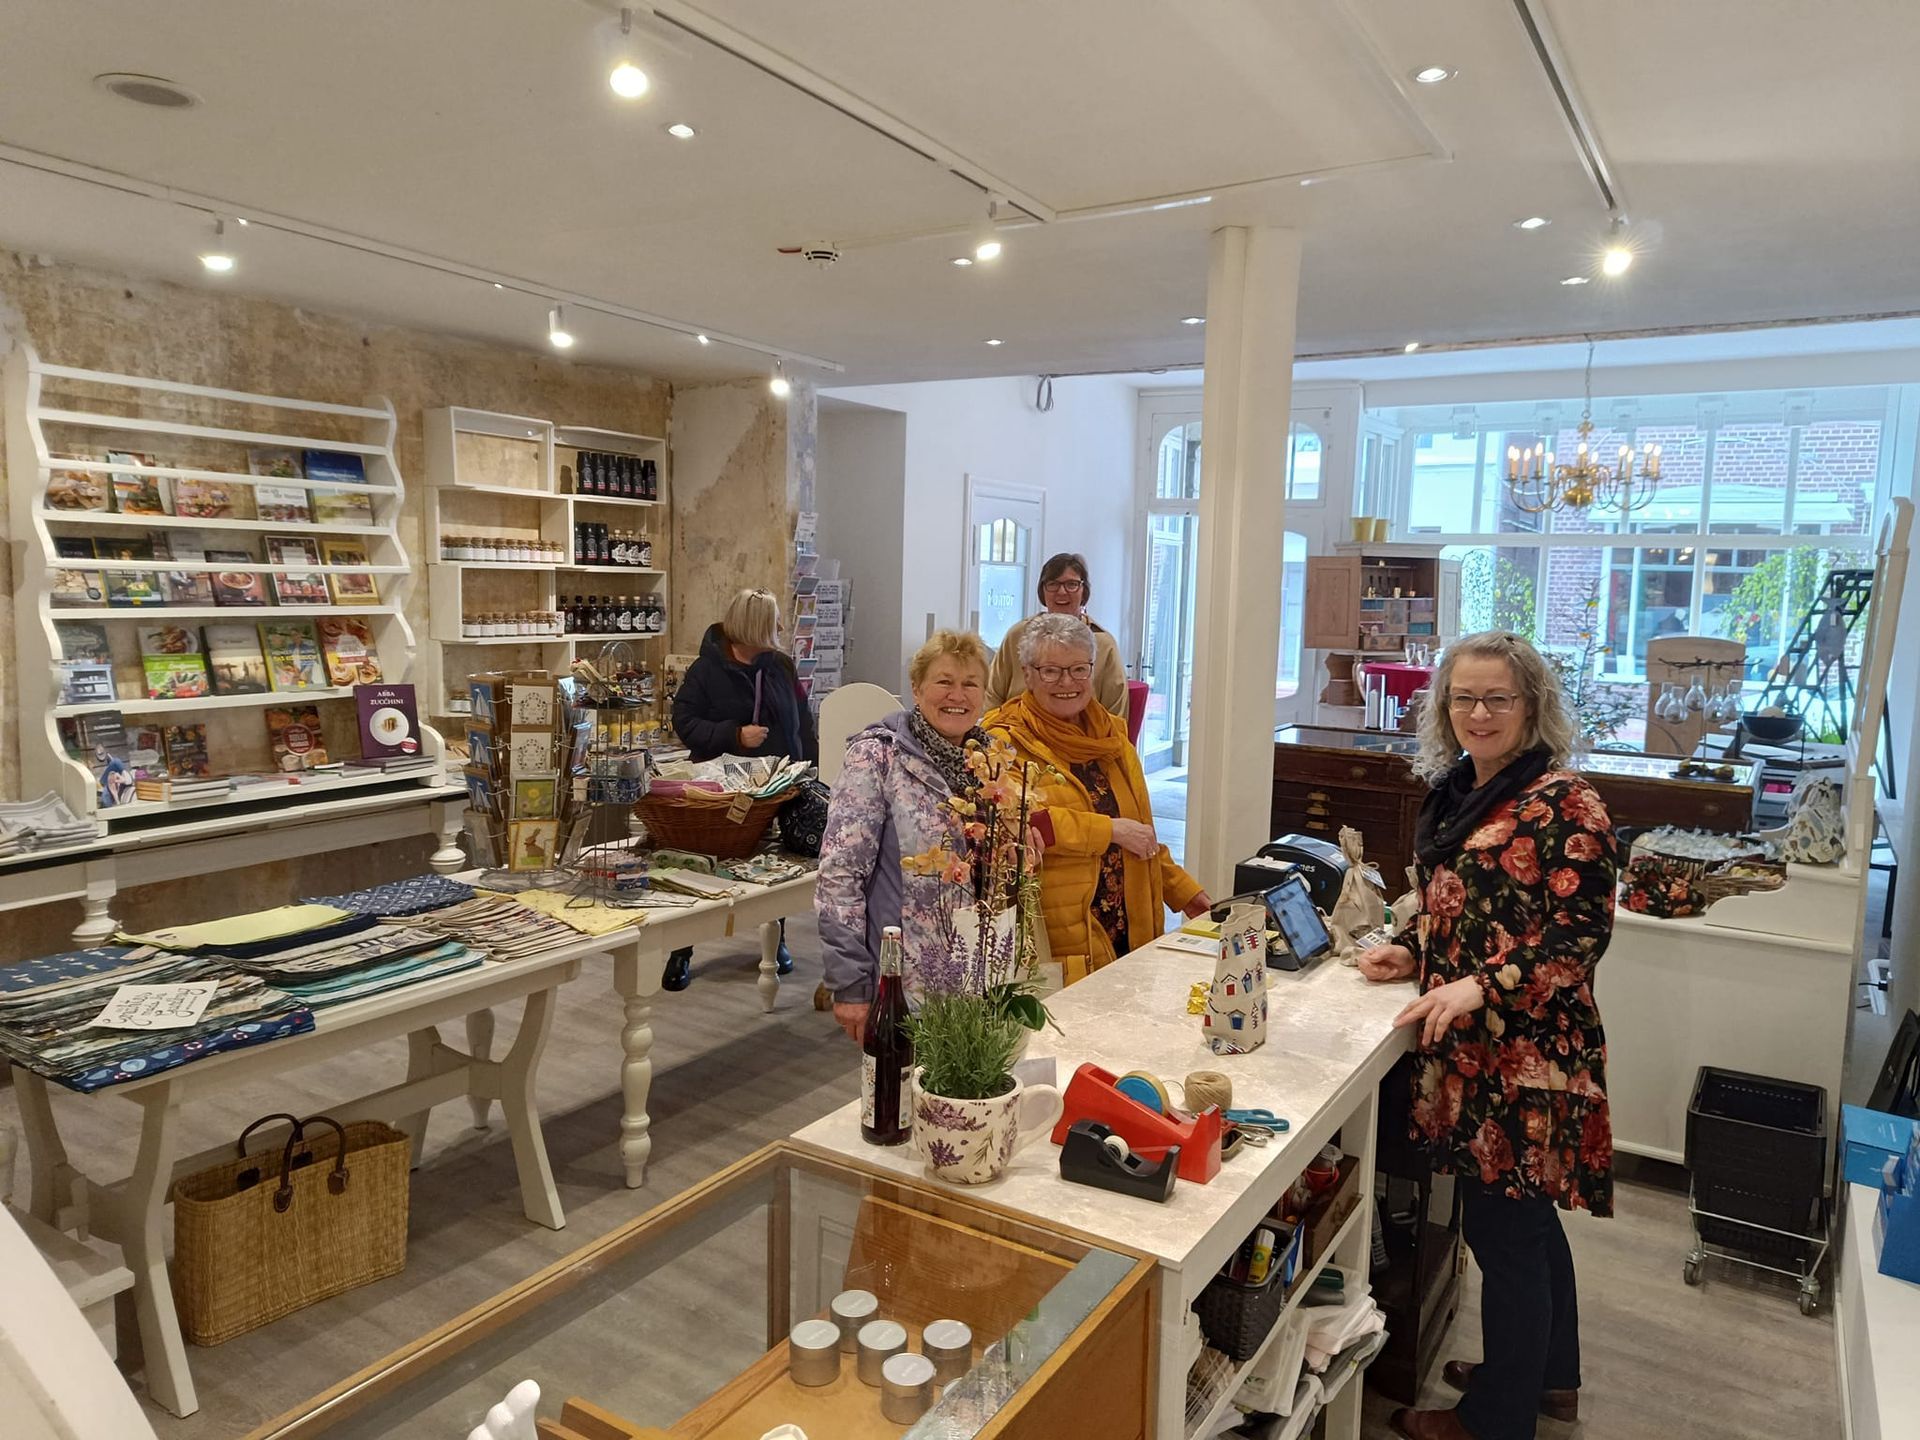 Bild: Anja Wienecke, Kunden und Mitarbeiterinnen im Laden. Link zum Artikel über das Friedrichs